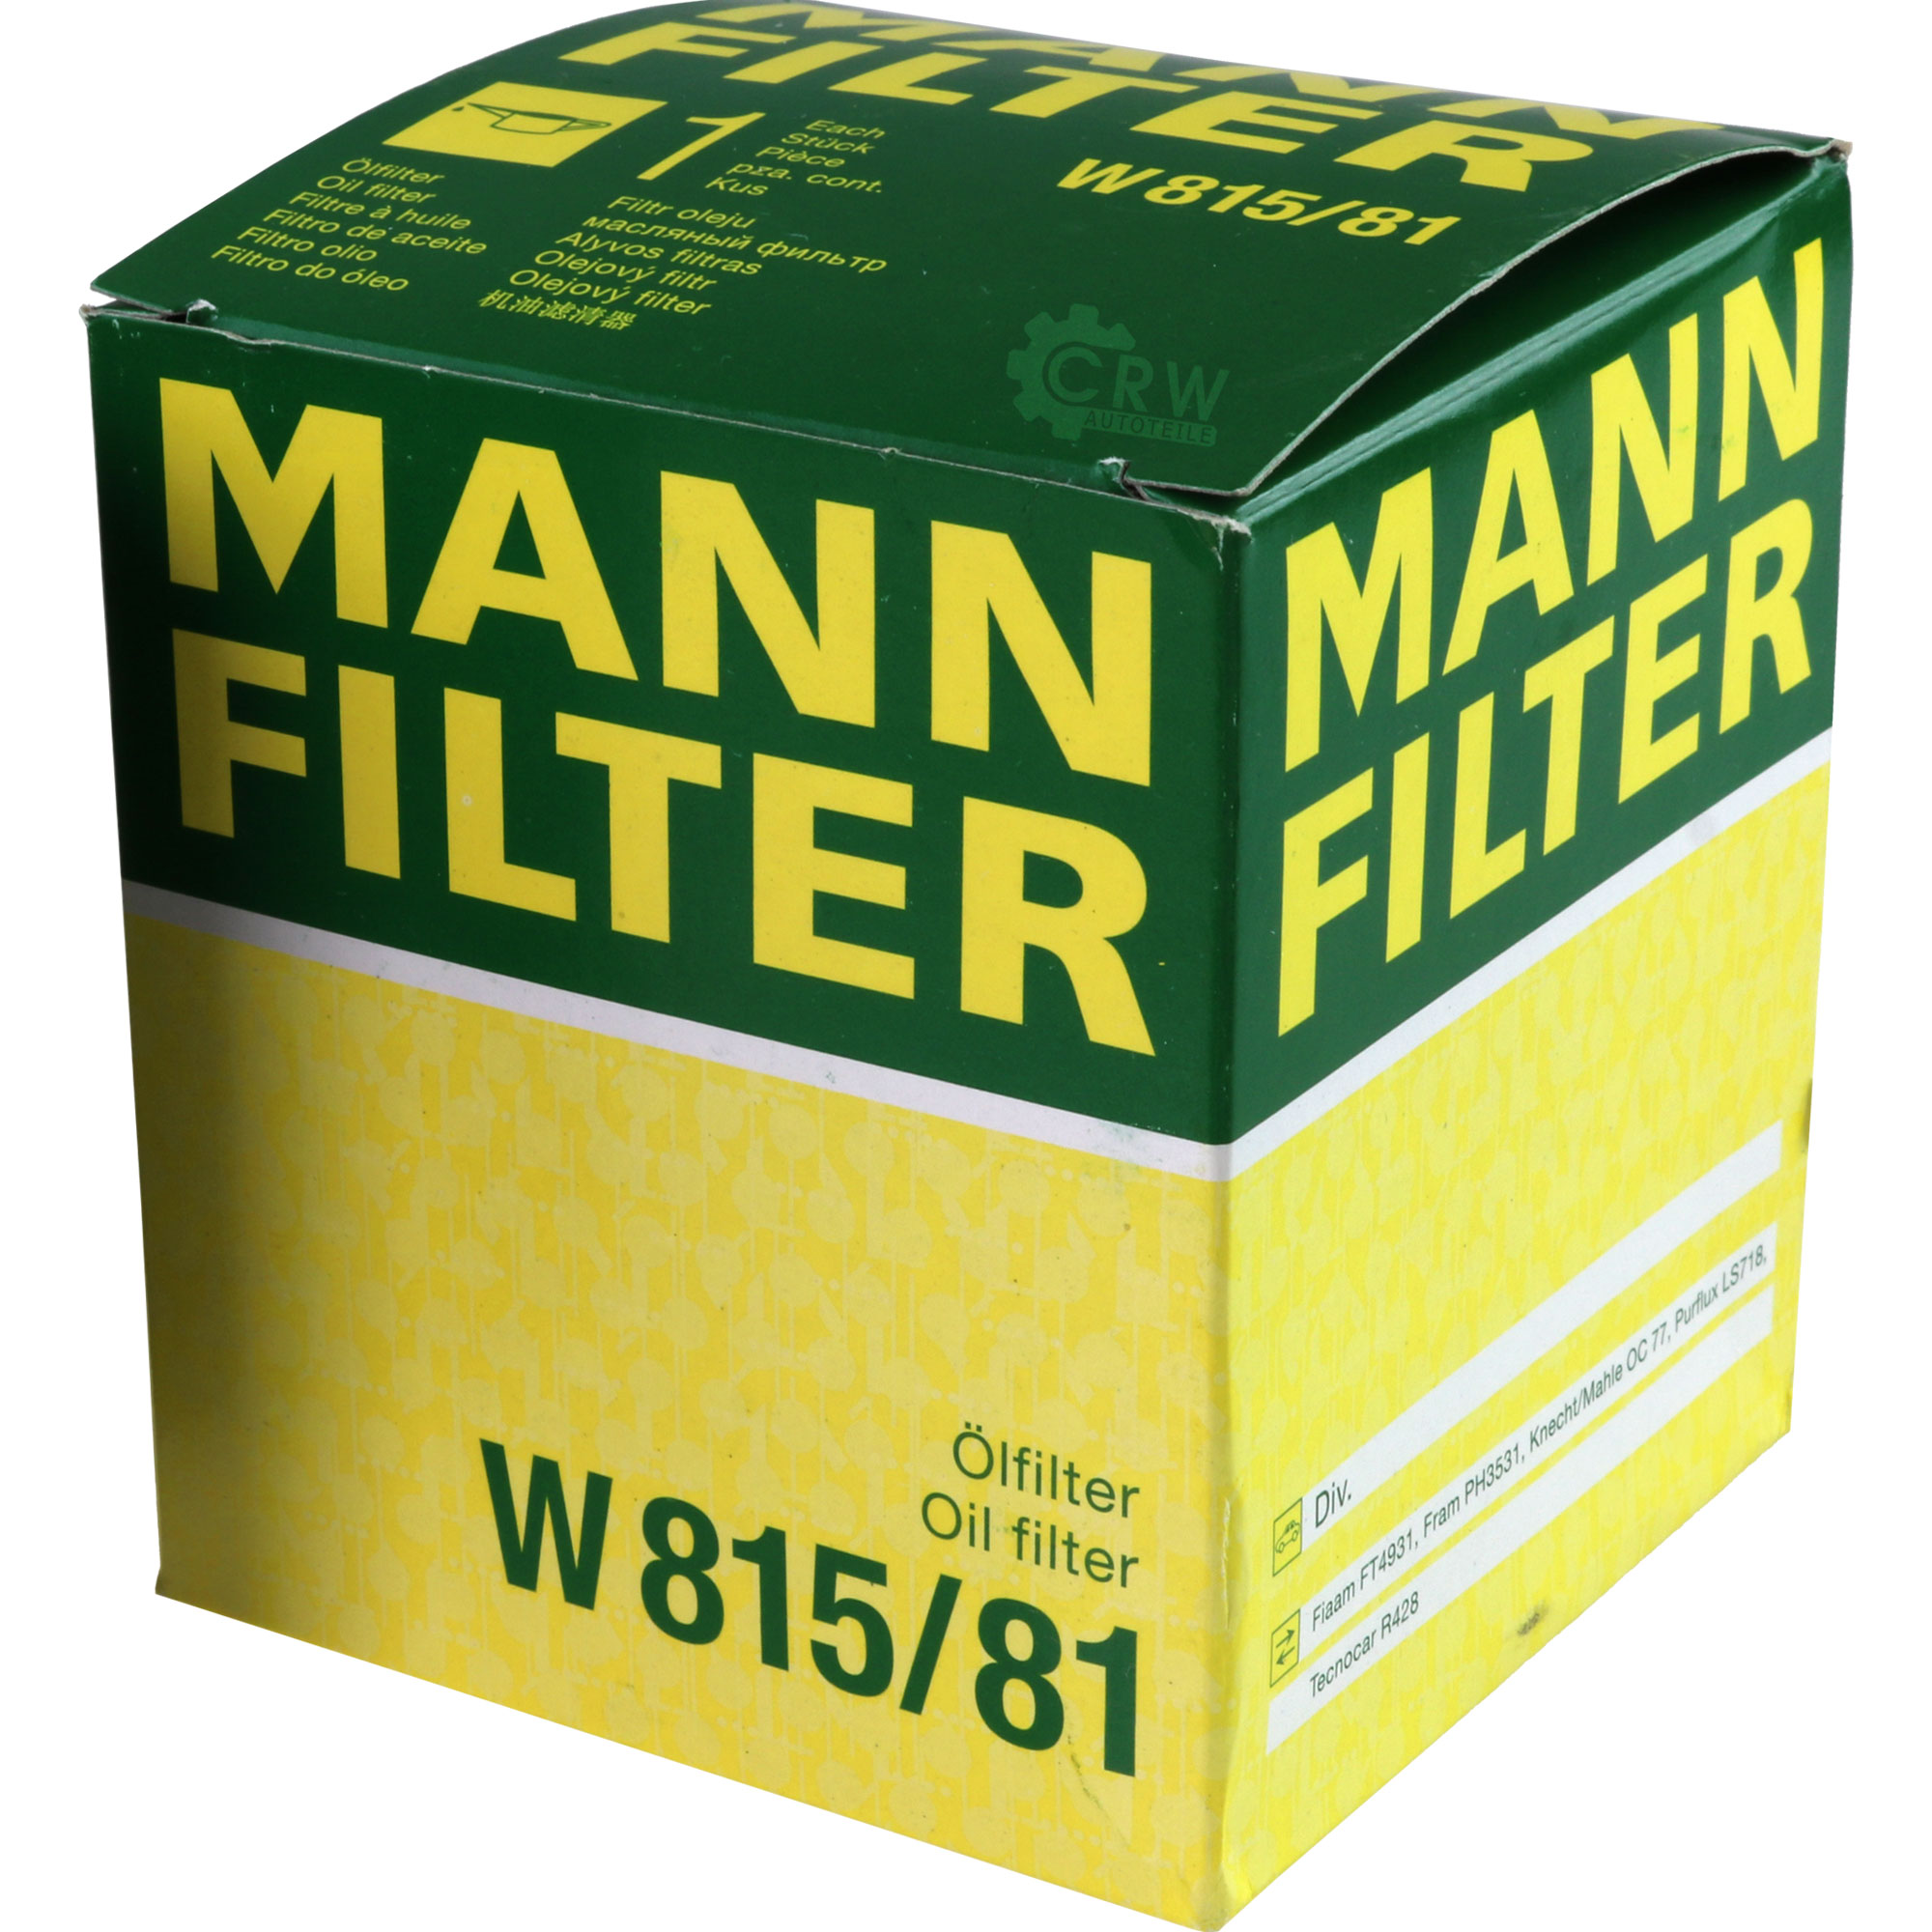 MANN-FILTER Ölfilter W 815/81 Oil Filter